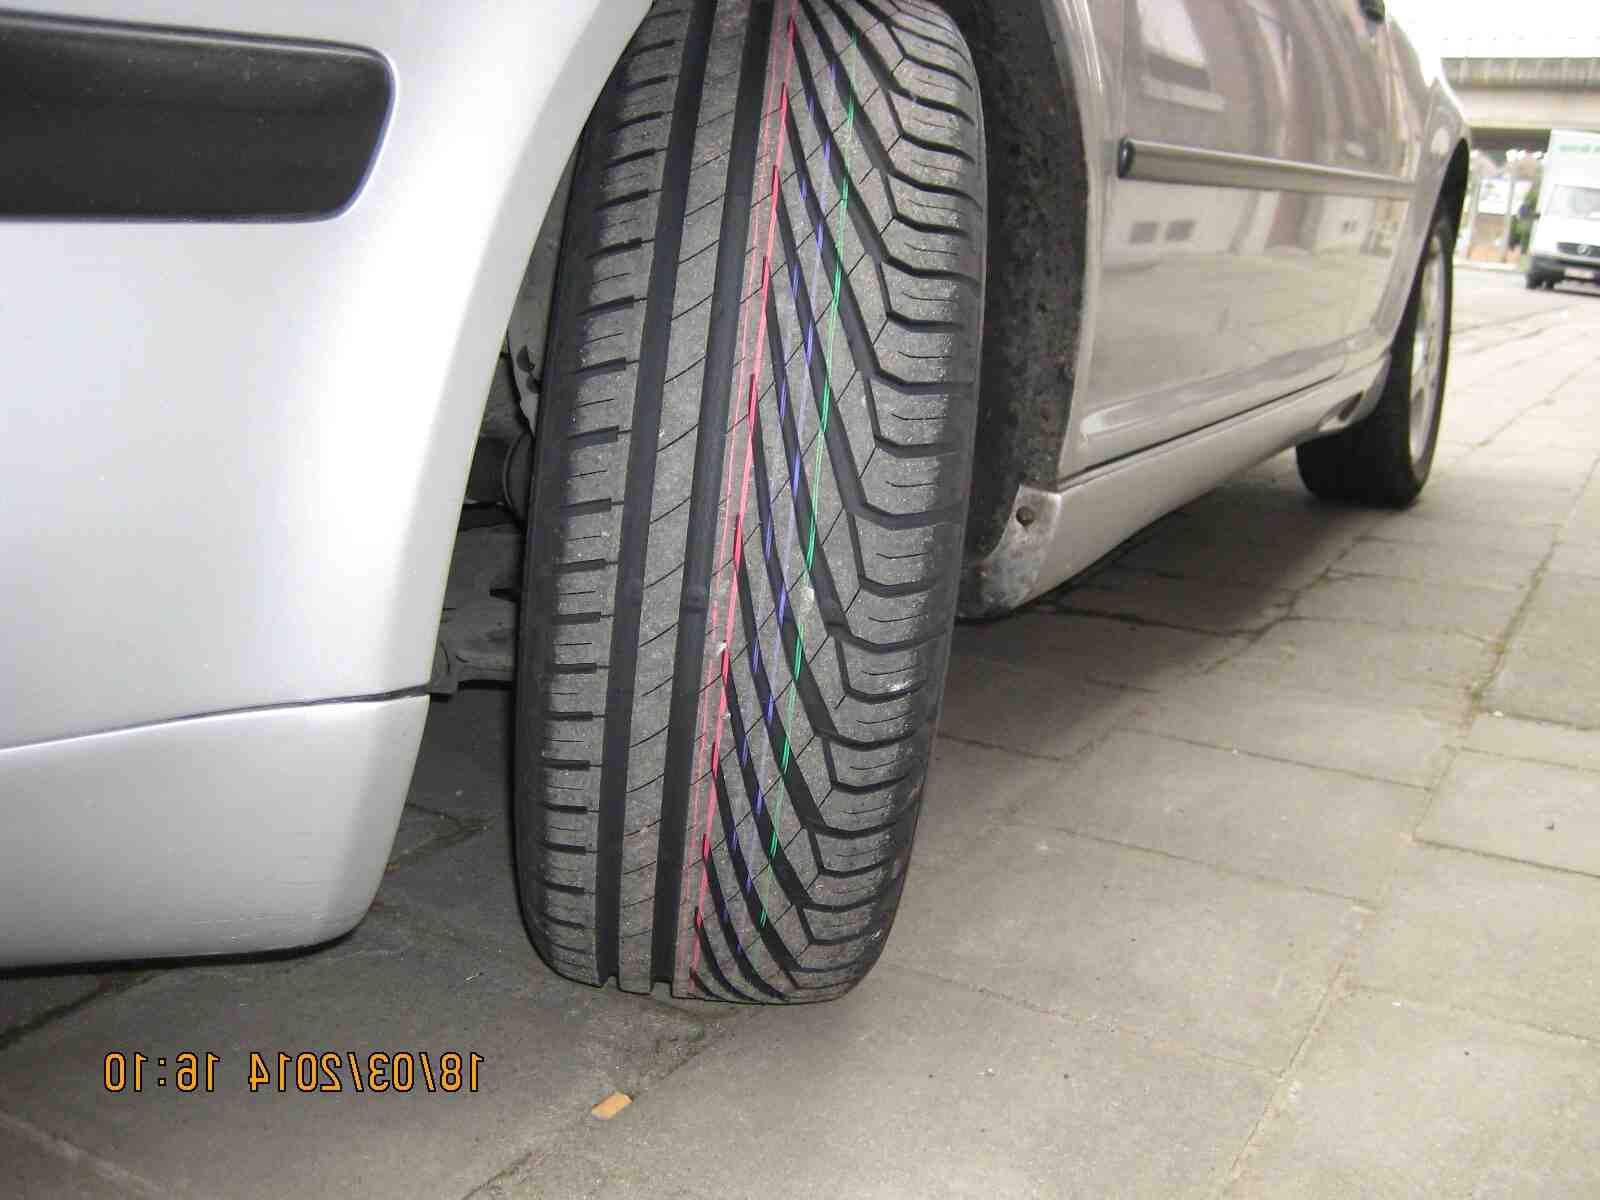 Comment connaître les pneus avant ou arrière?